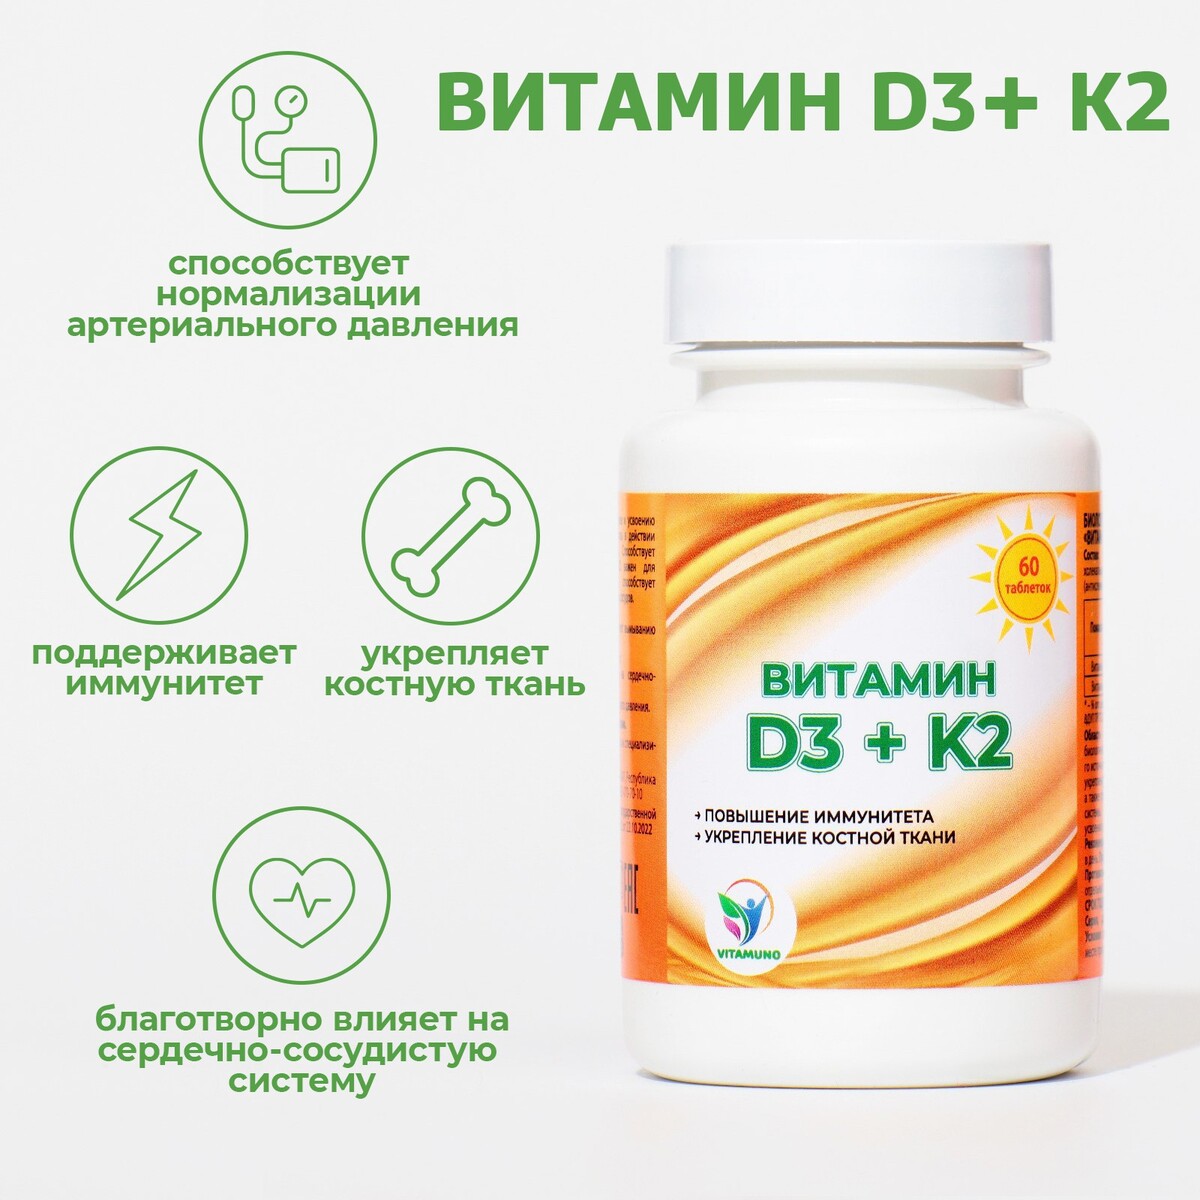  d3 + k2 vitamuno, 600 , 60 